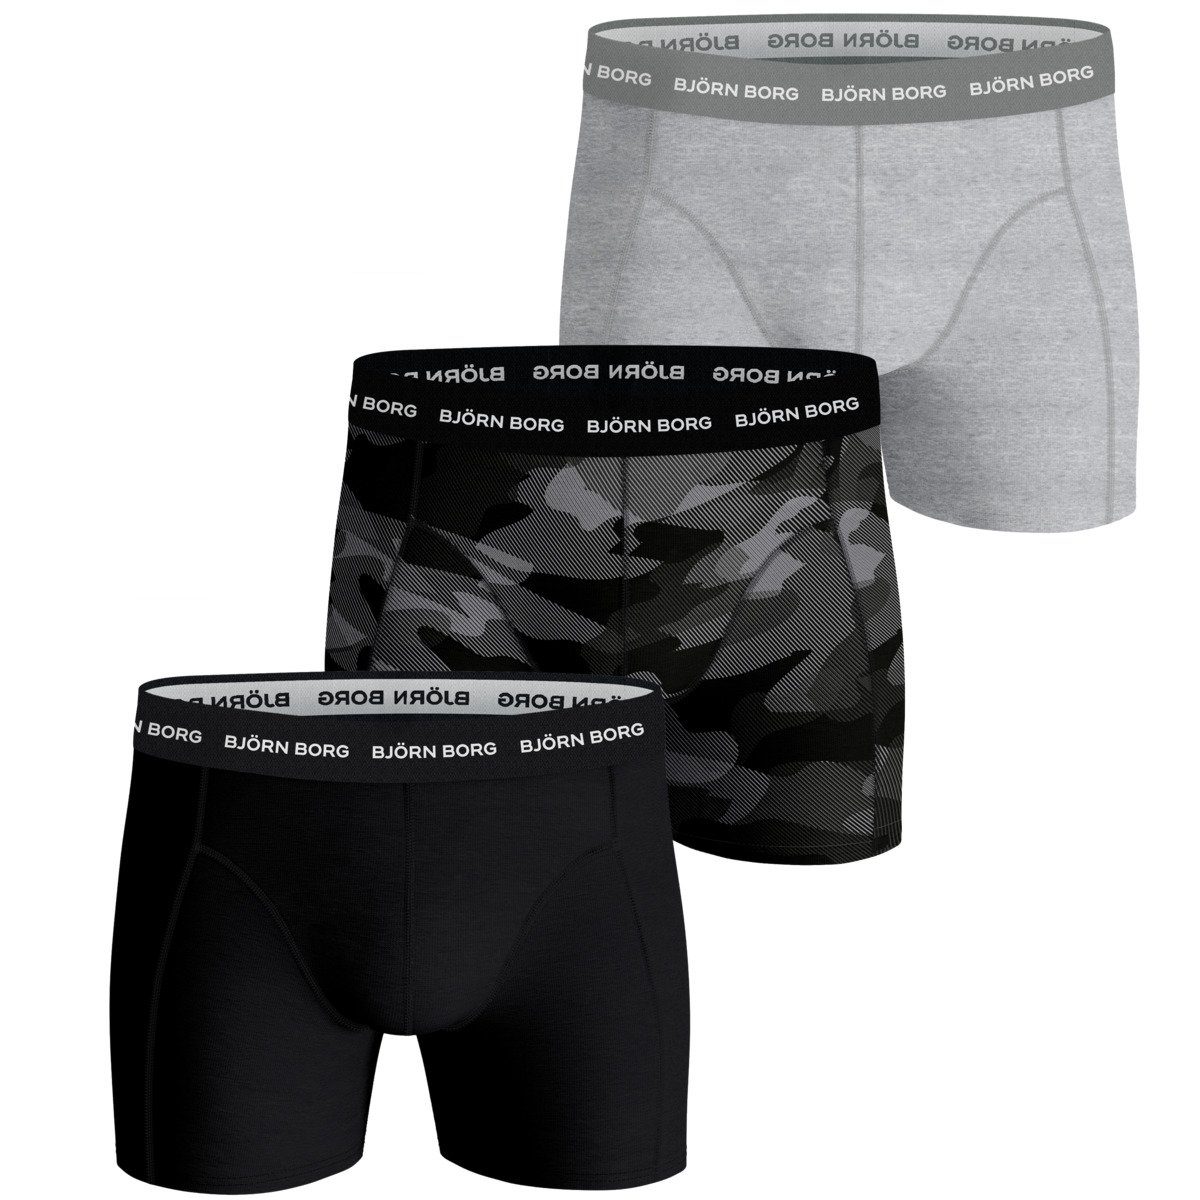 Herren (3-St) 3er Björn Essential Pack Borg Shadeline schwarz/grau/camouflage Boxershorts